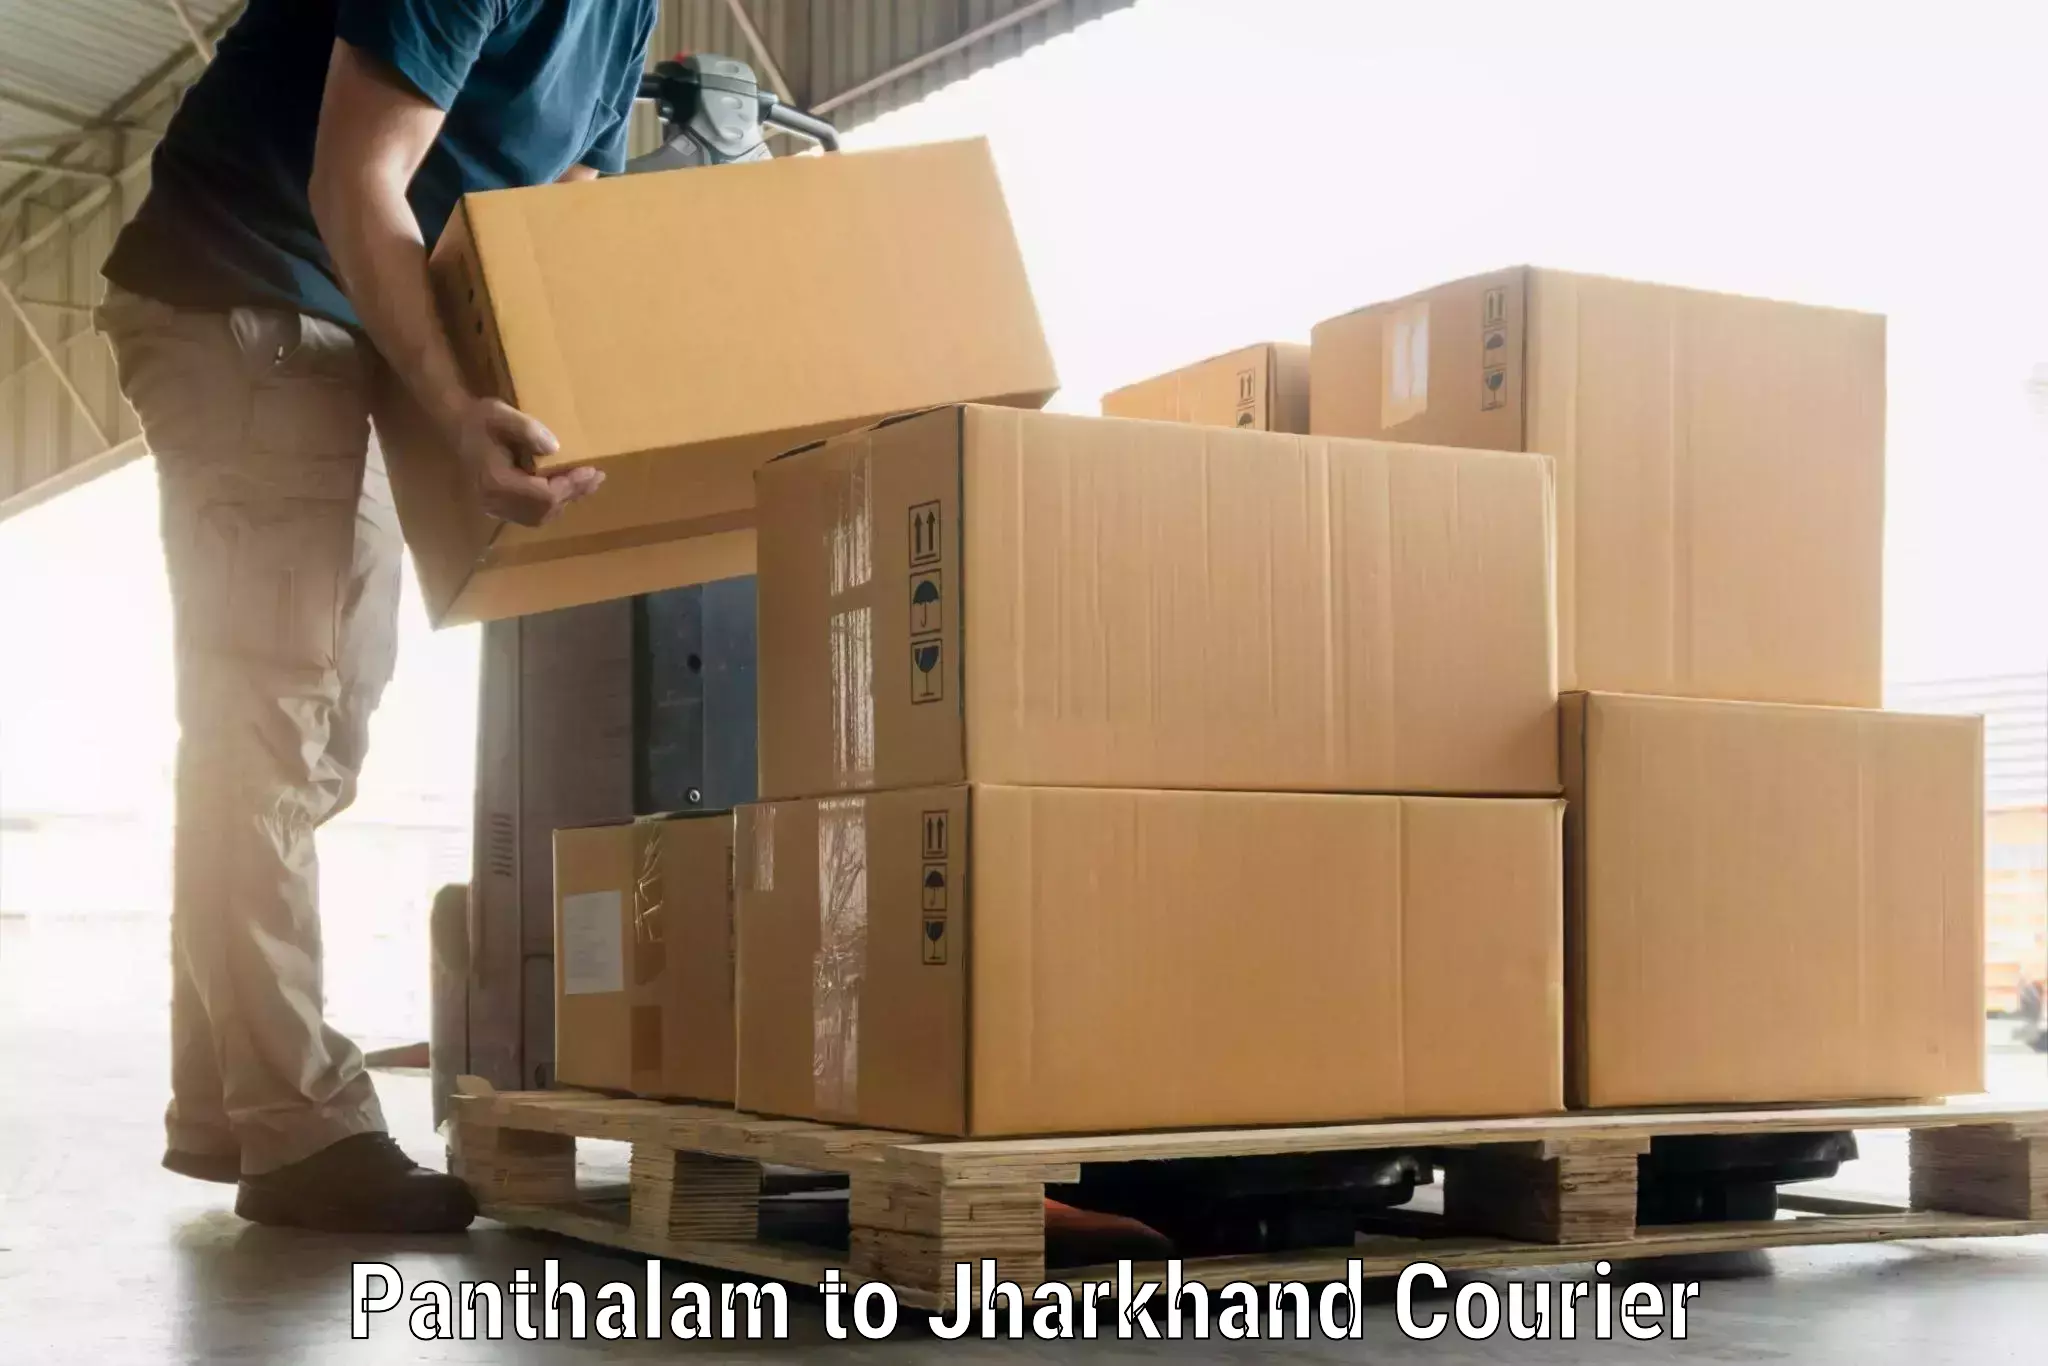 Baggage transport scheduler Panthalam to Medininagar